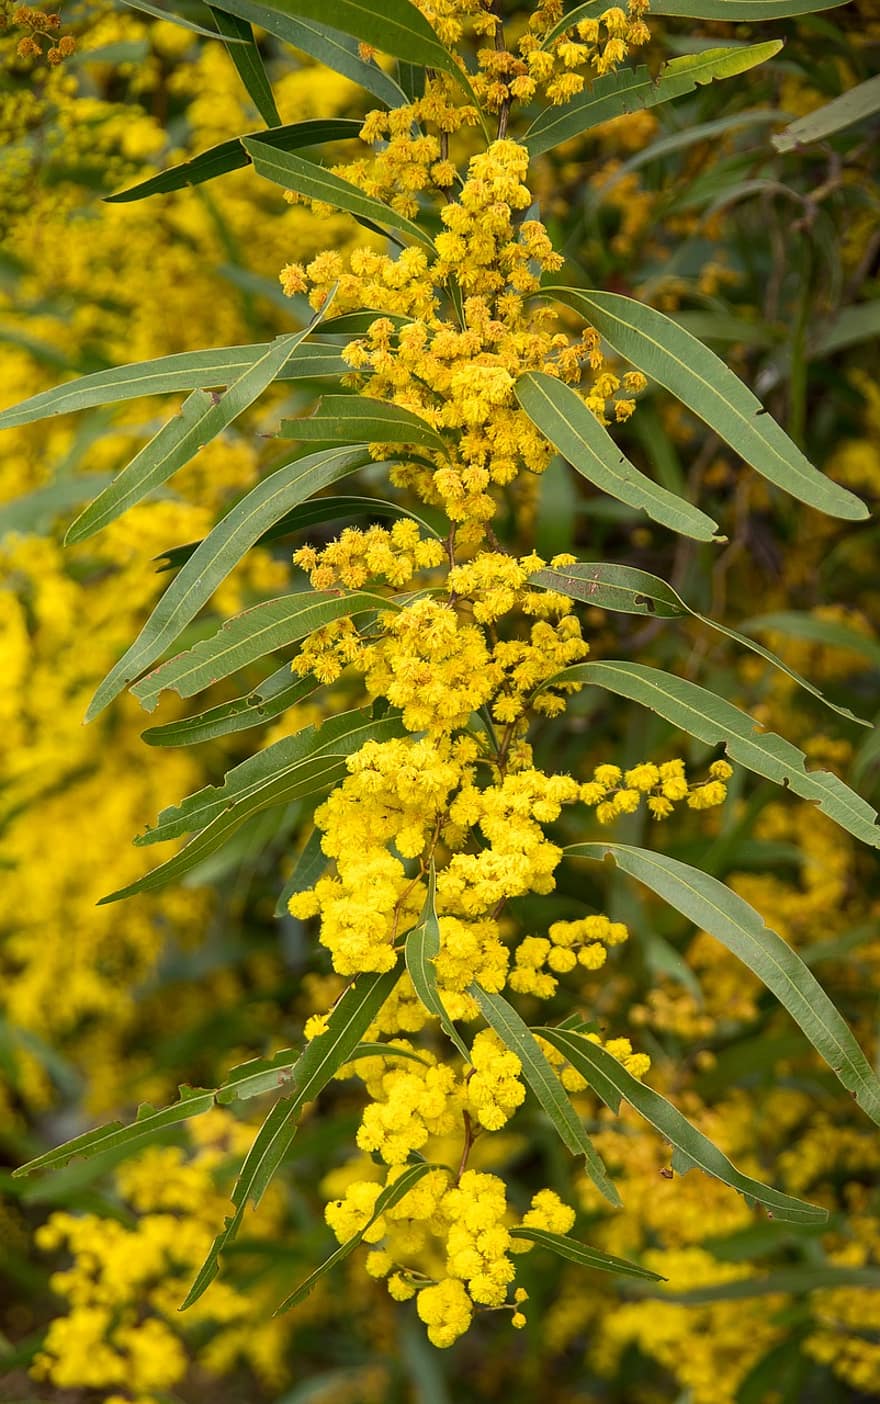 아카시아, 욋가지, 꽃들, 화분, 노랑, 모호한, 호주 원주민, pixabay